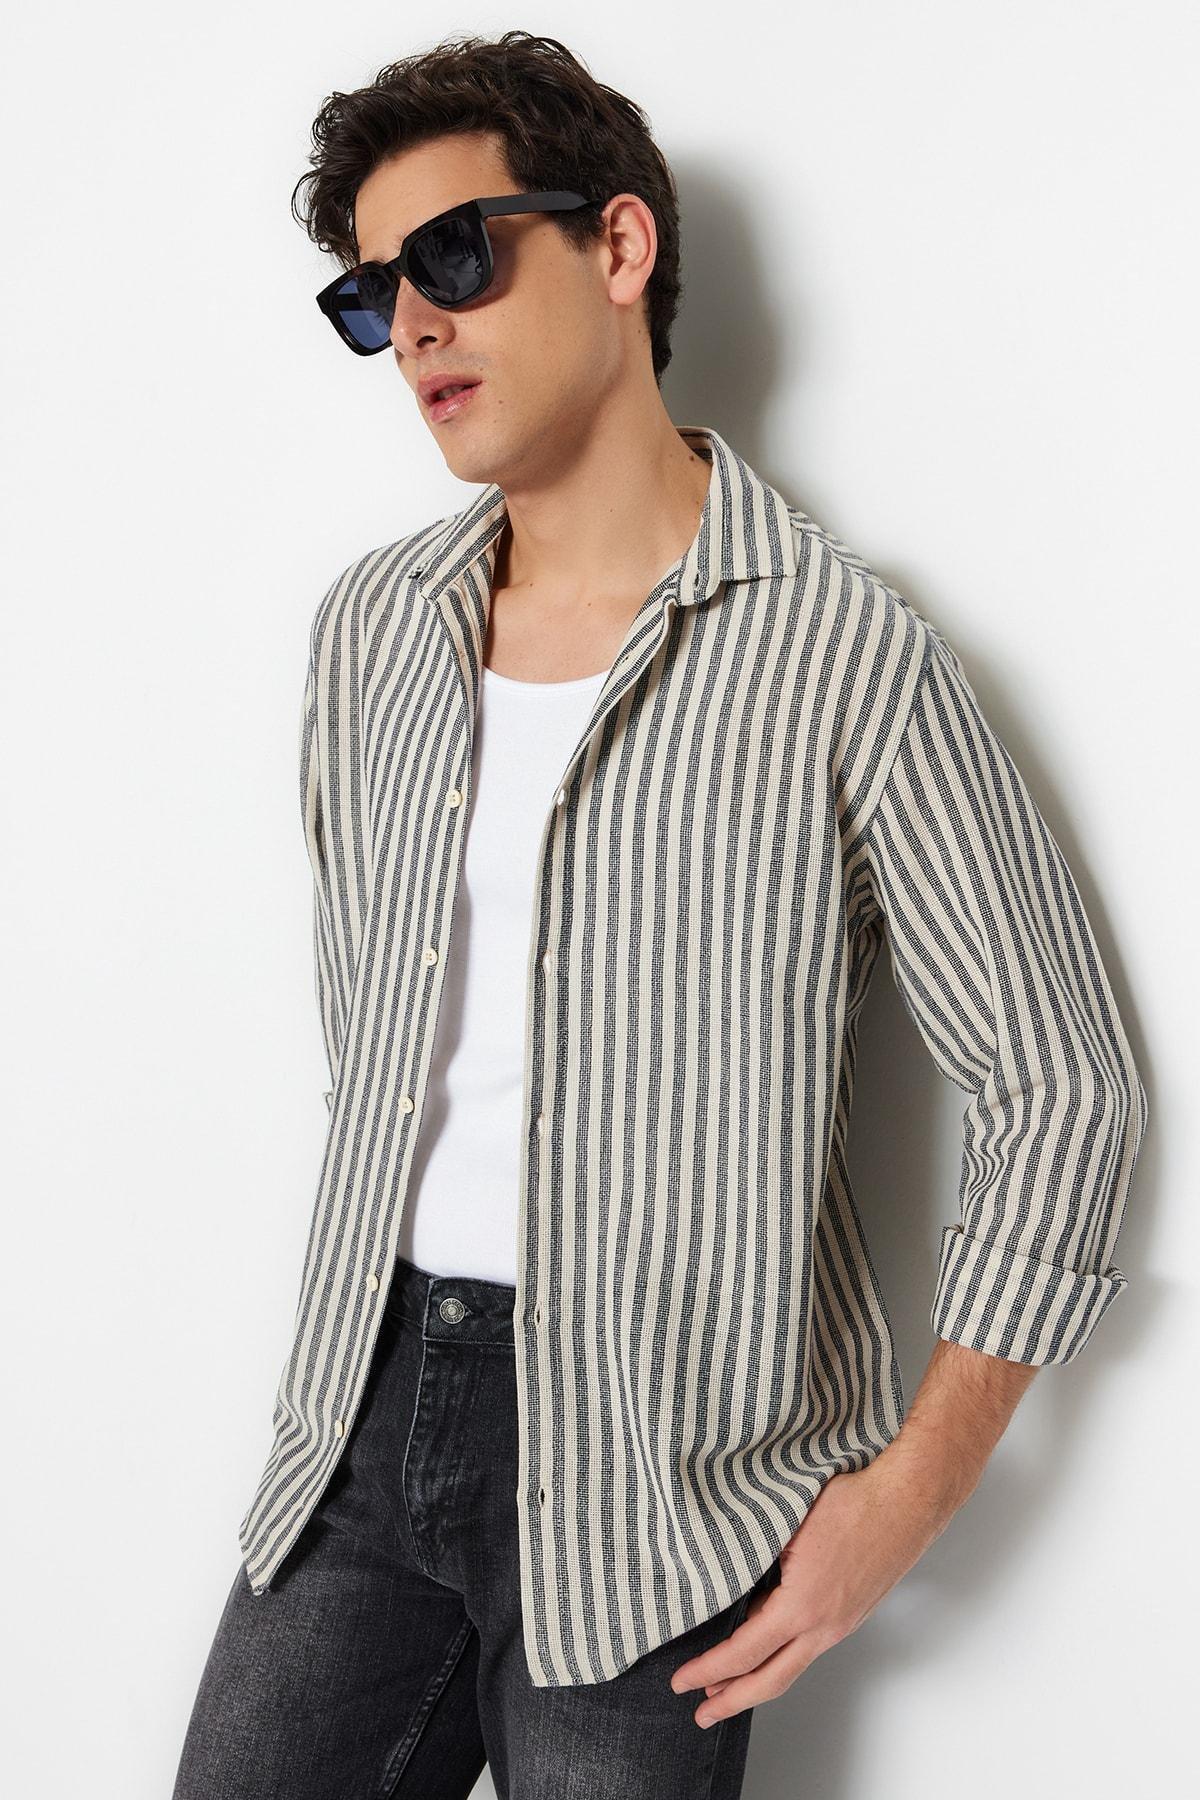 Trendyol - Navy Striped Shirt